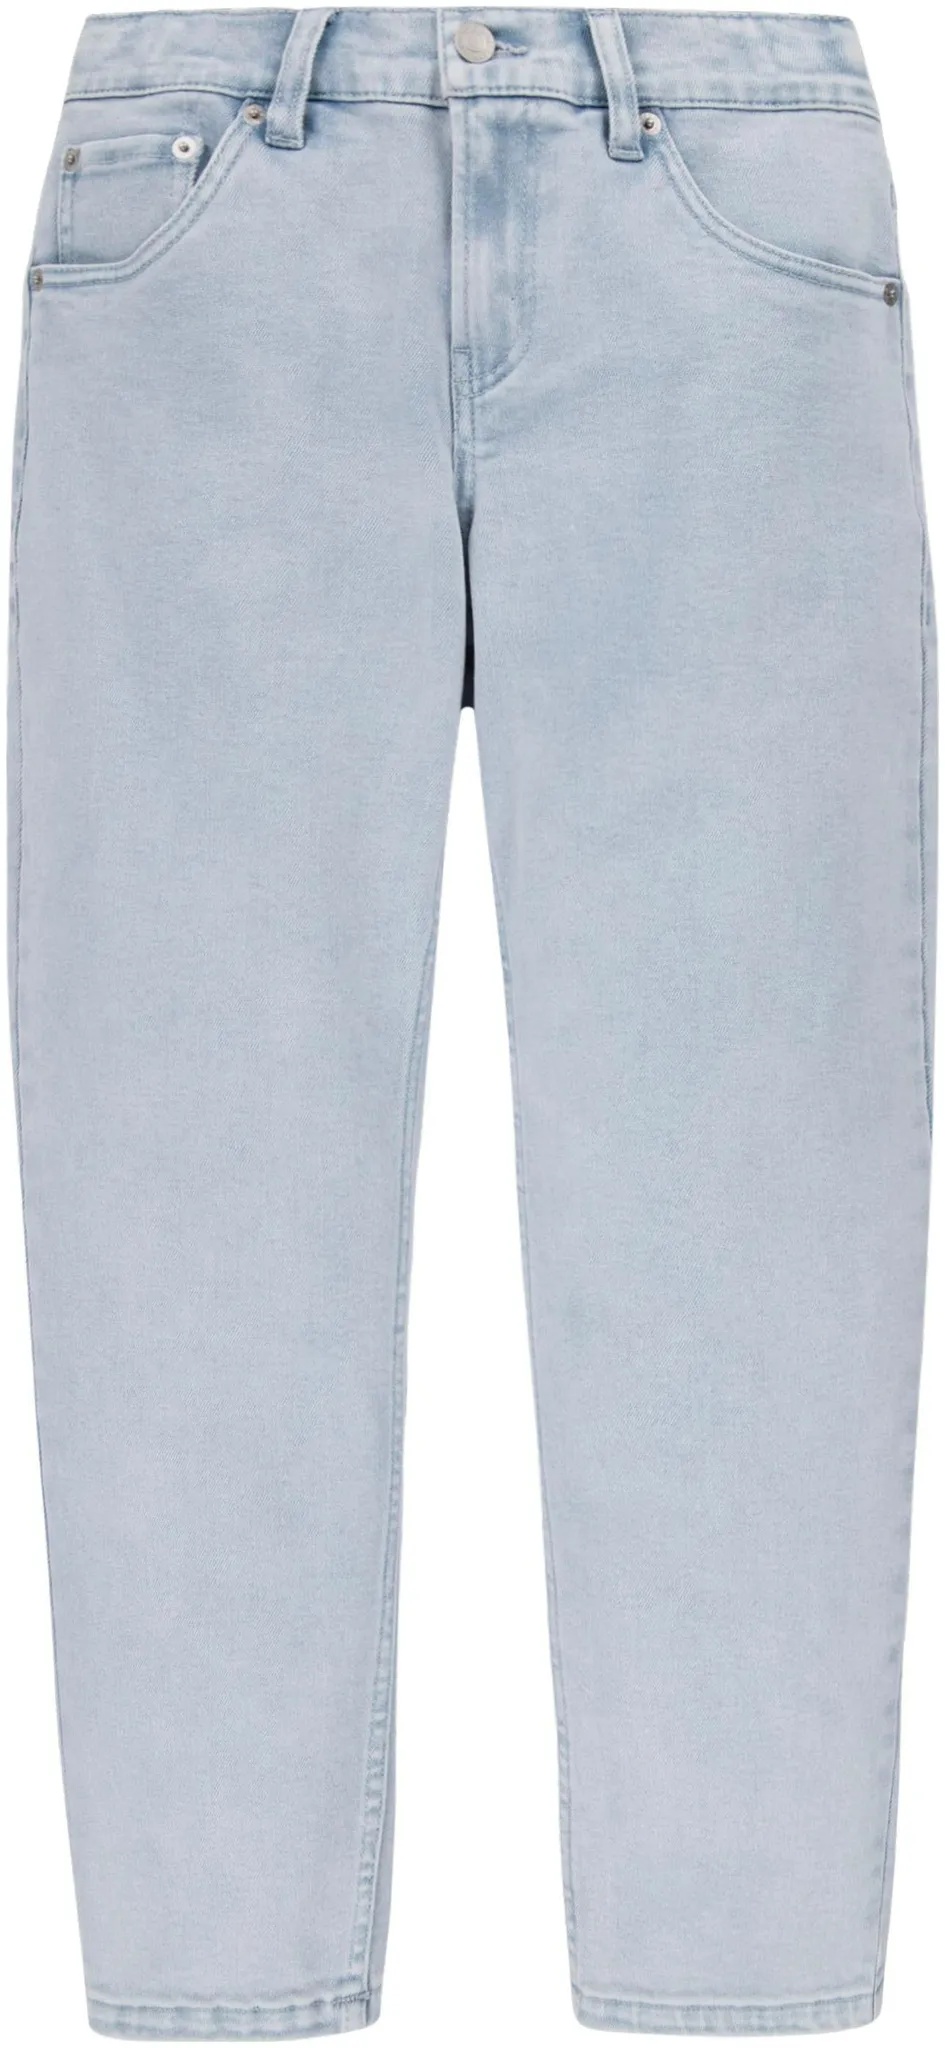 Stretch-Jeans LEVI'S KIDS "LVB STAY LOOSE TAPER JEANS" Gr. 12 (152), N-Gr, silberfarben (silver linin) Jungen Jeans Bekleidung for BOYS